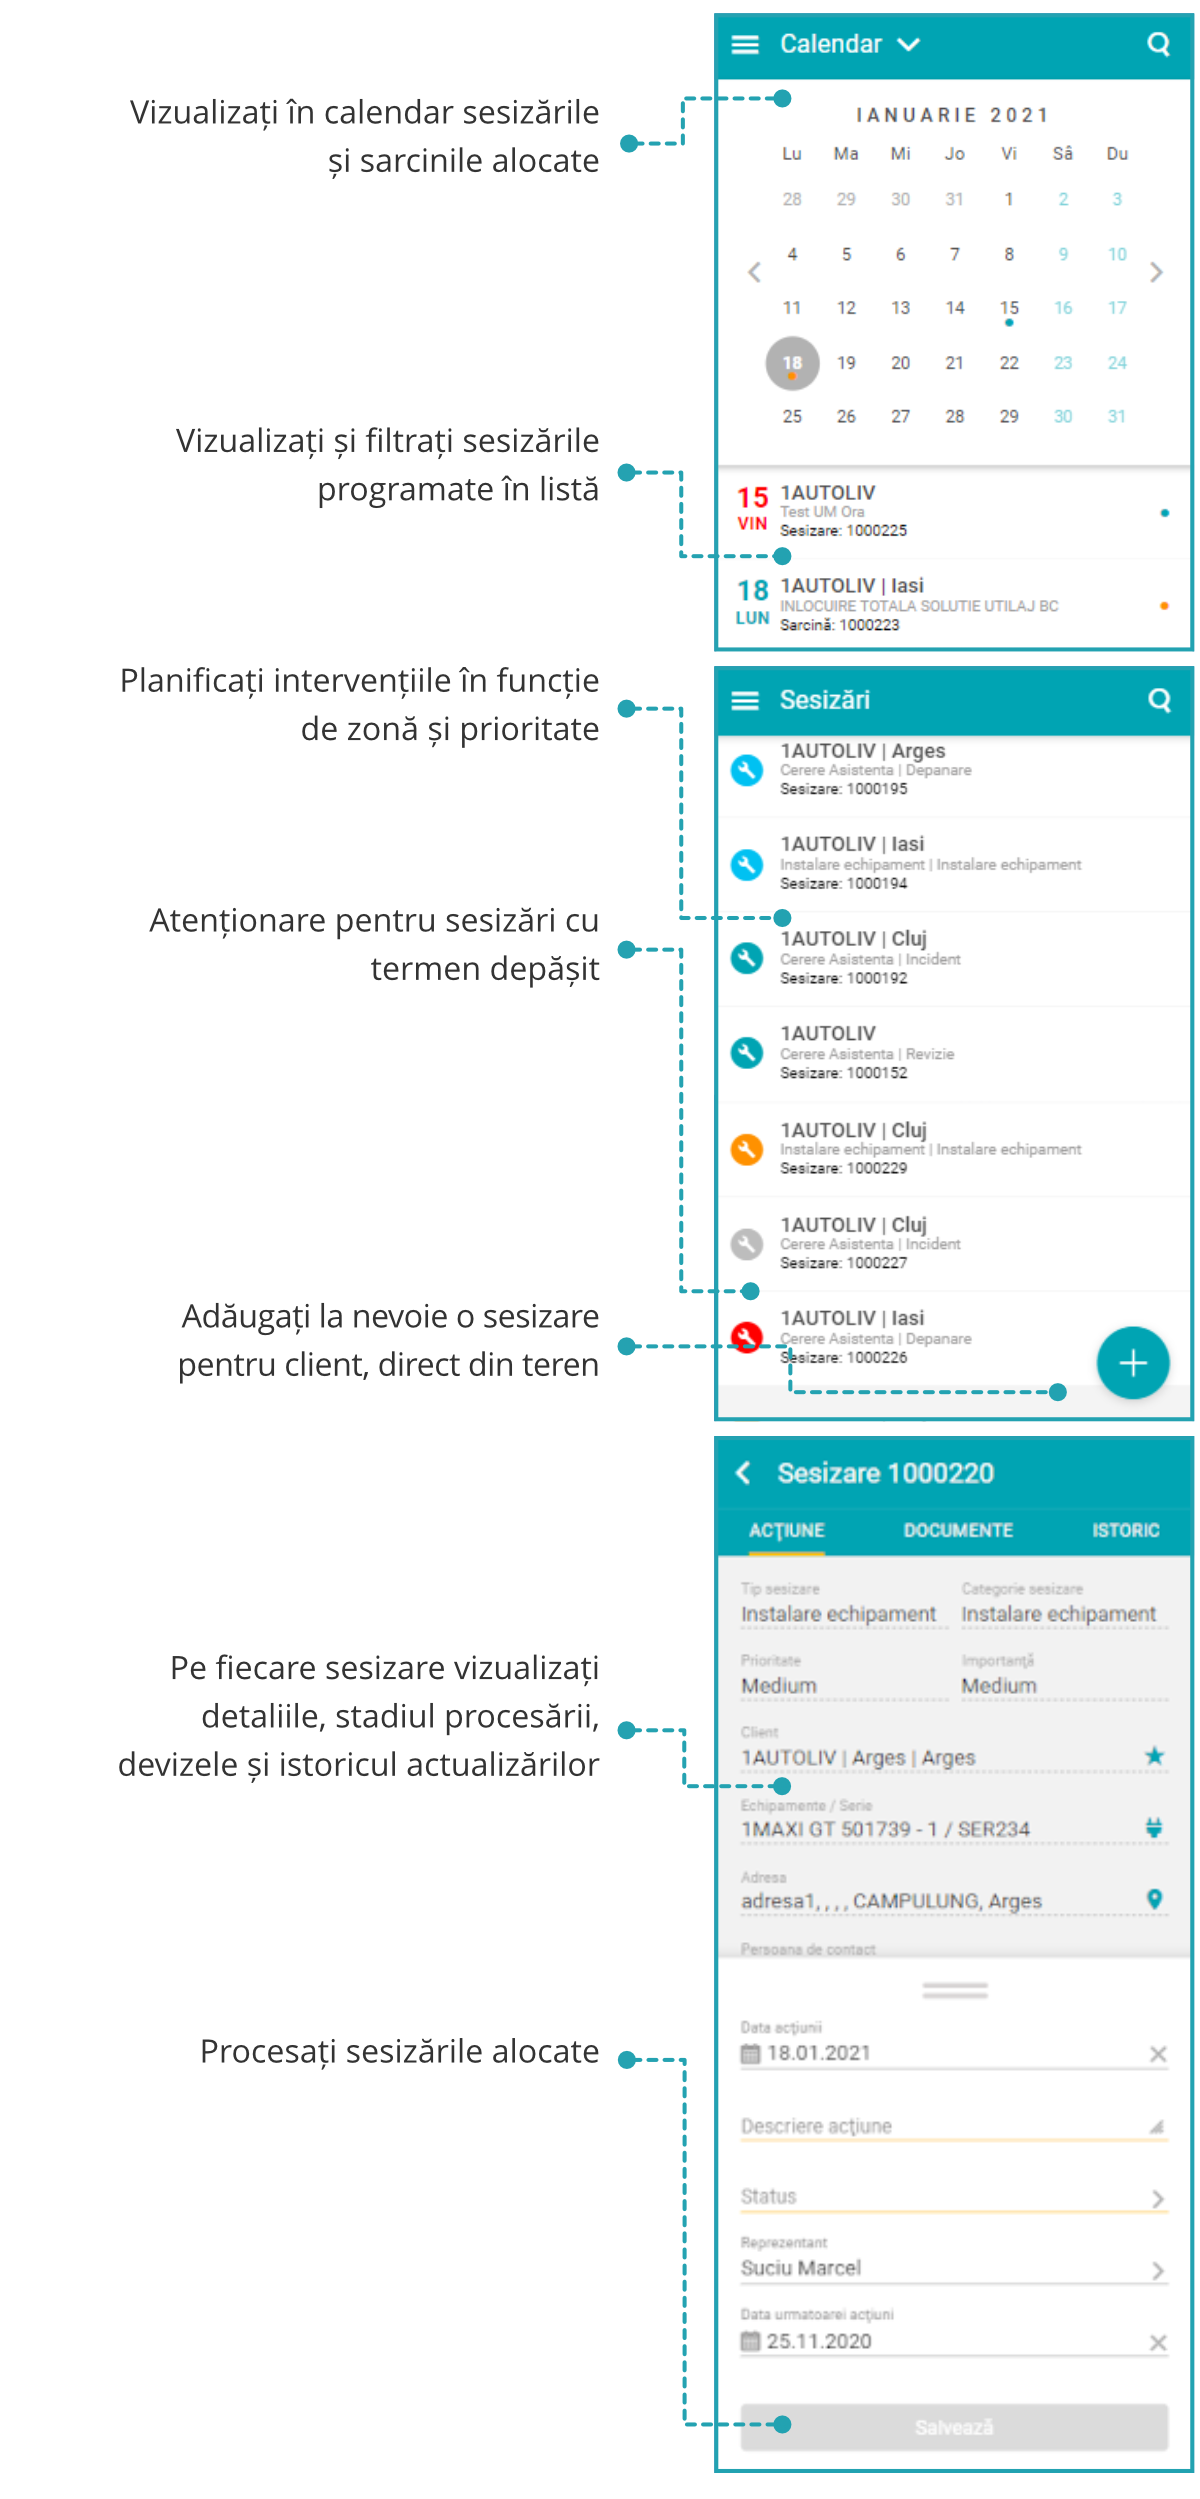 SocrateService - Aplicație mobilă pentru reprezentanții de service